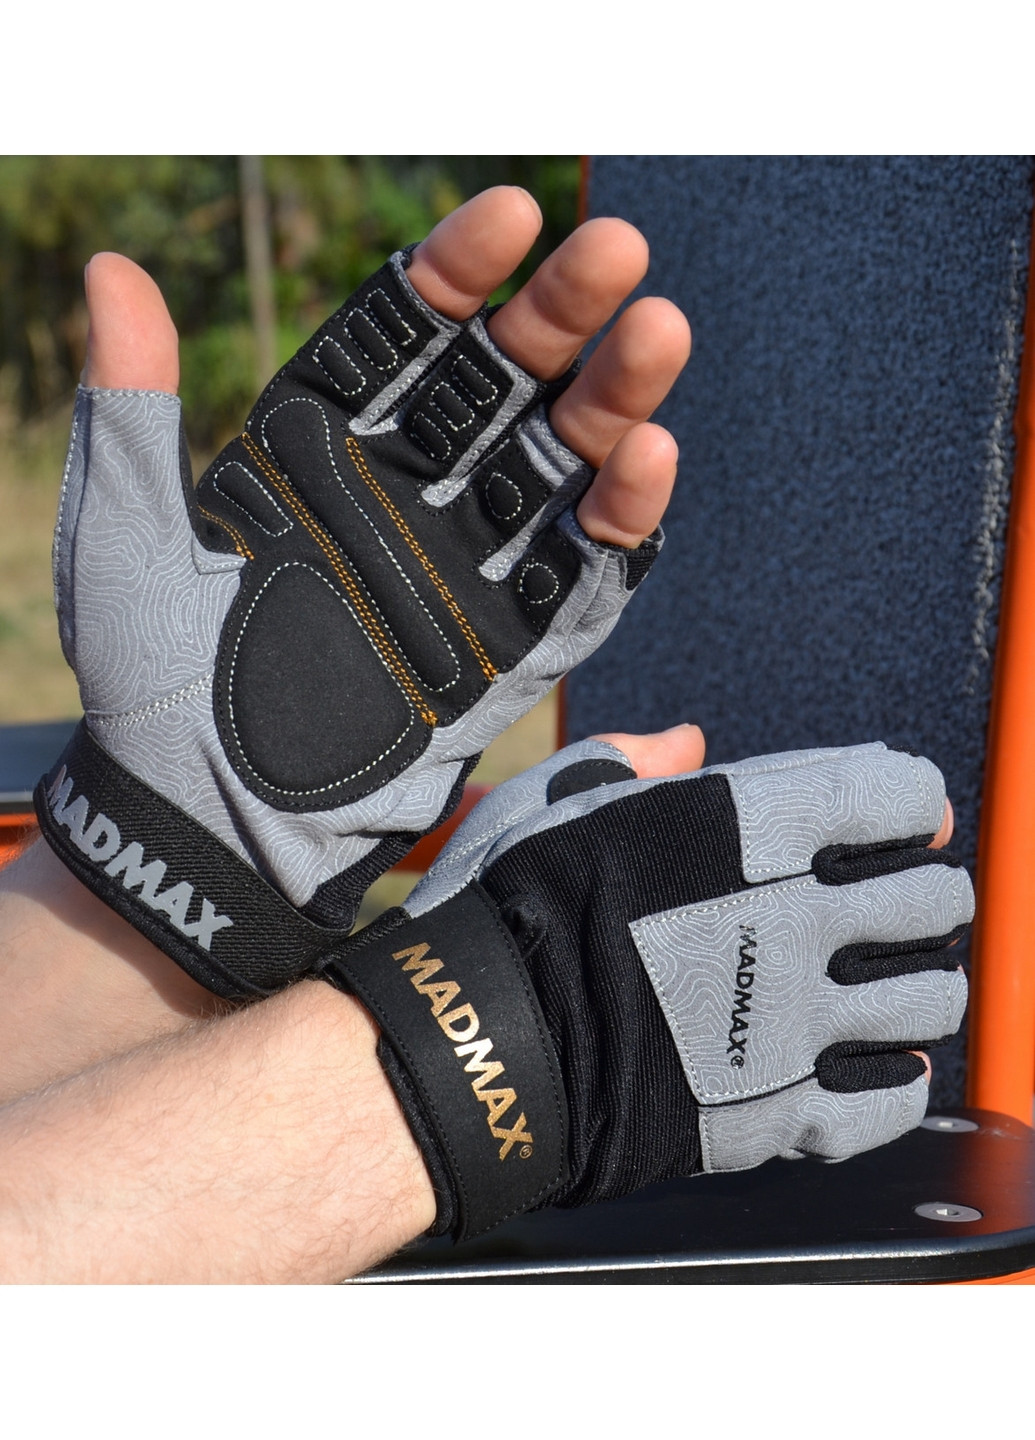 Унісекс рукавички для фітнесу XXL Mad Max (267659612)